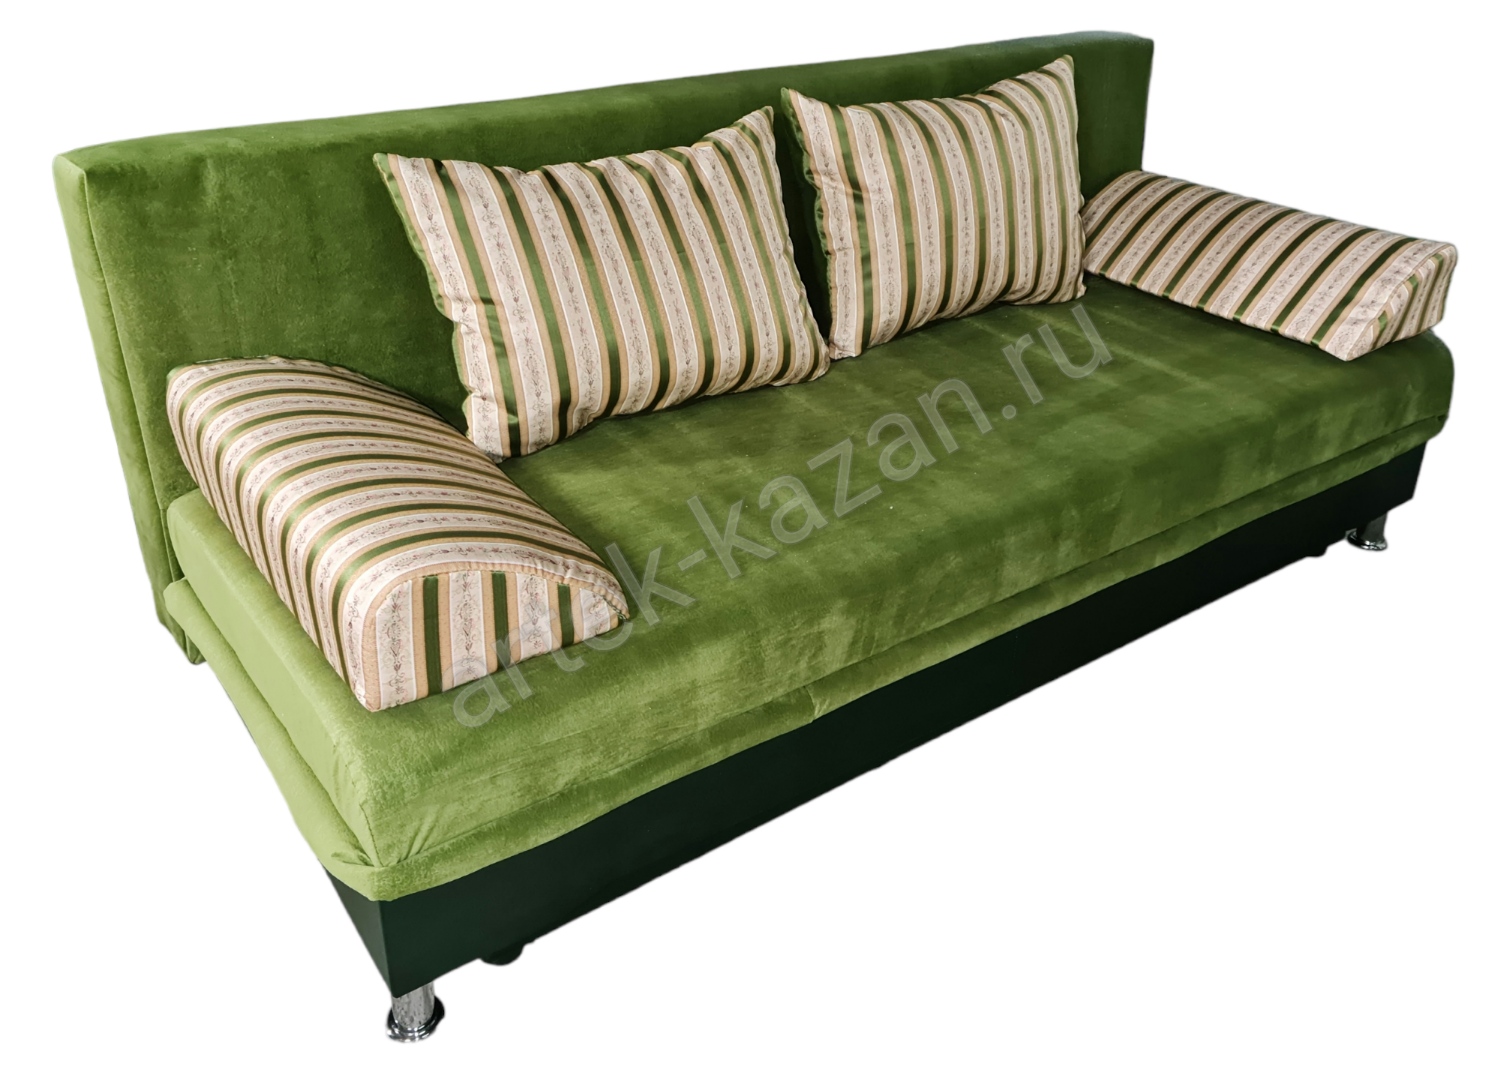 Диван еврокнижка -Эконом- флок зелёного цвета, по низу кожзам темно-зеленого цвета, подушки жаккард, цена 10000руб. Купить недорогой диван по низкой цене от производителя можно у нас.